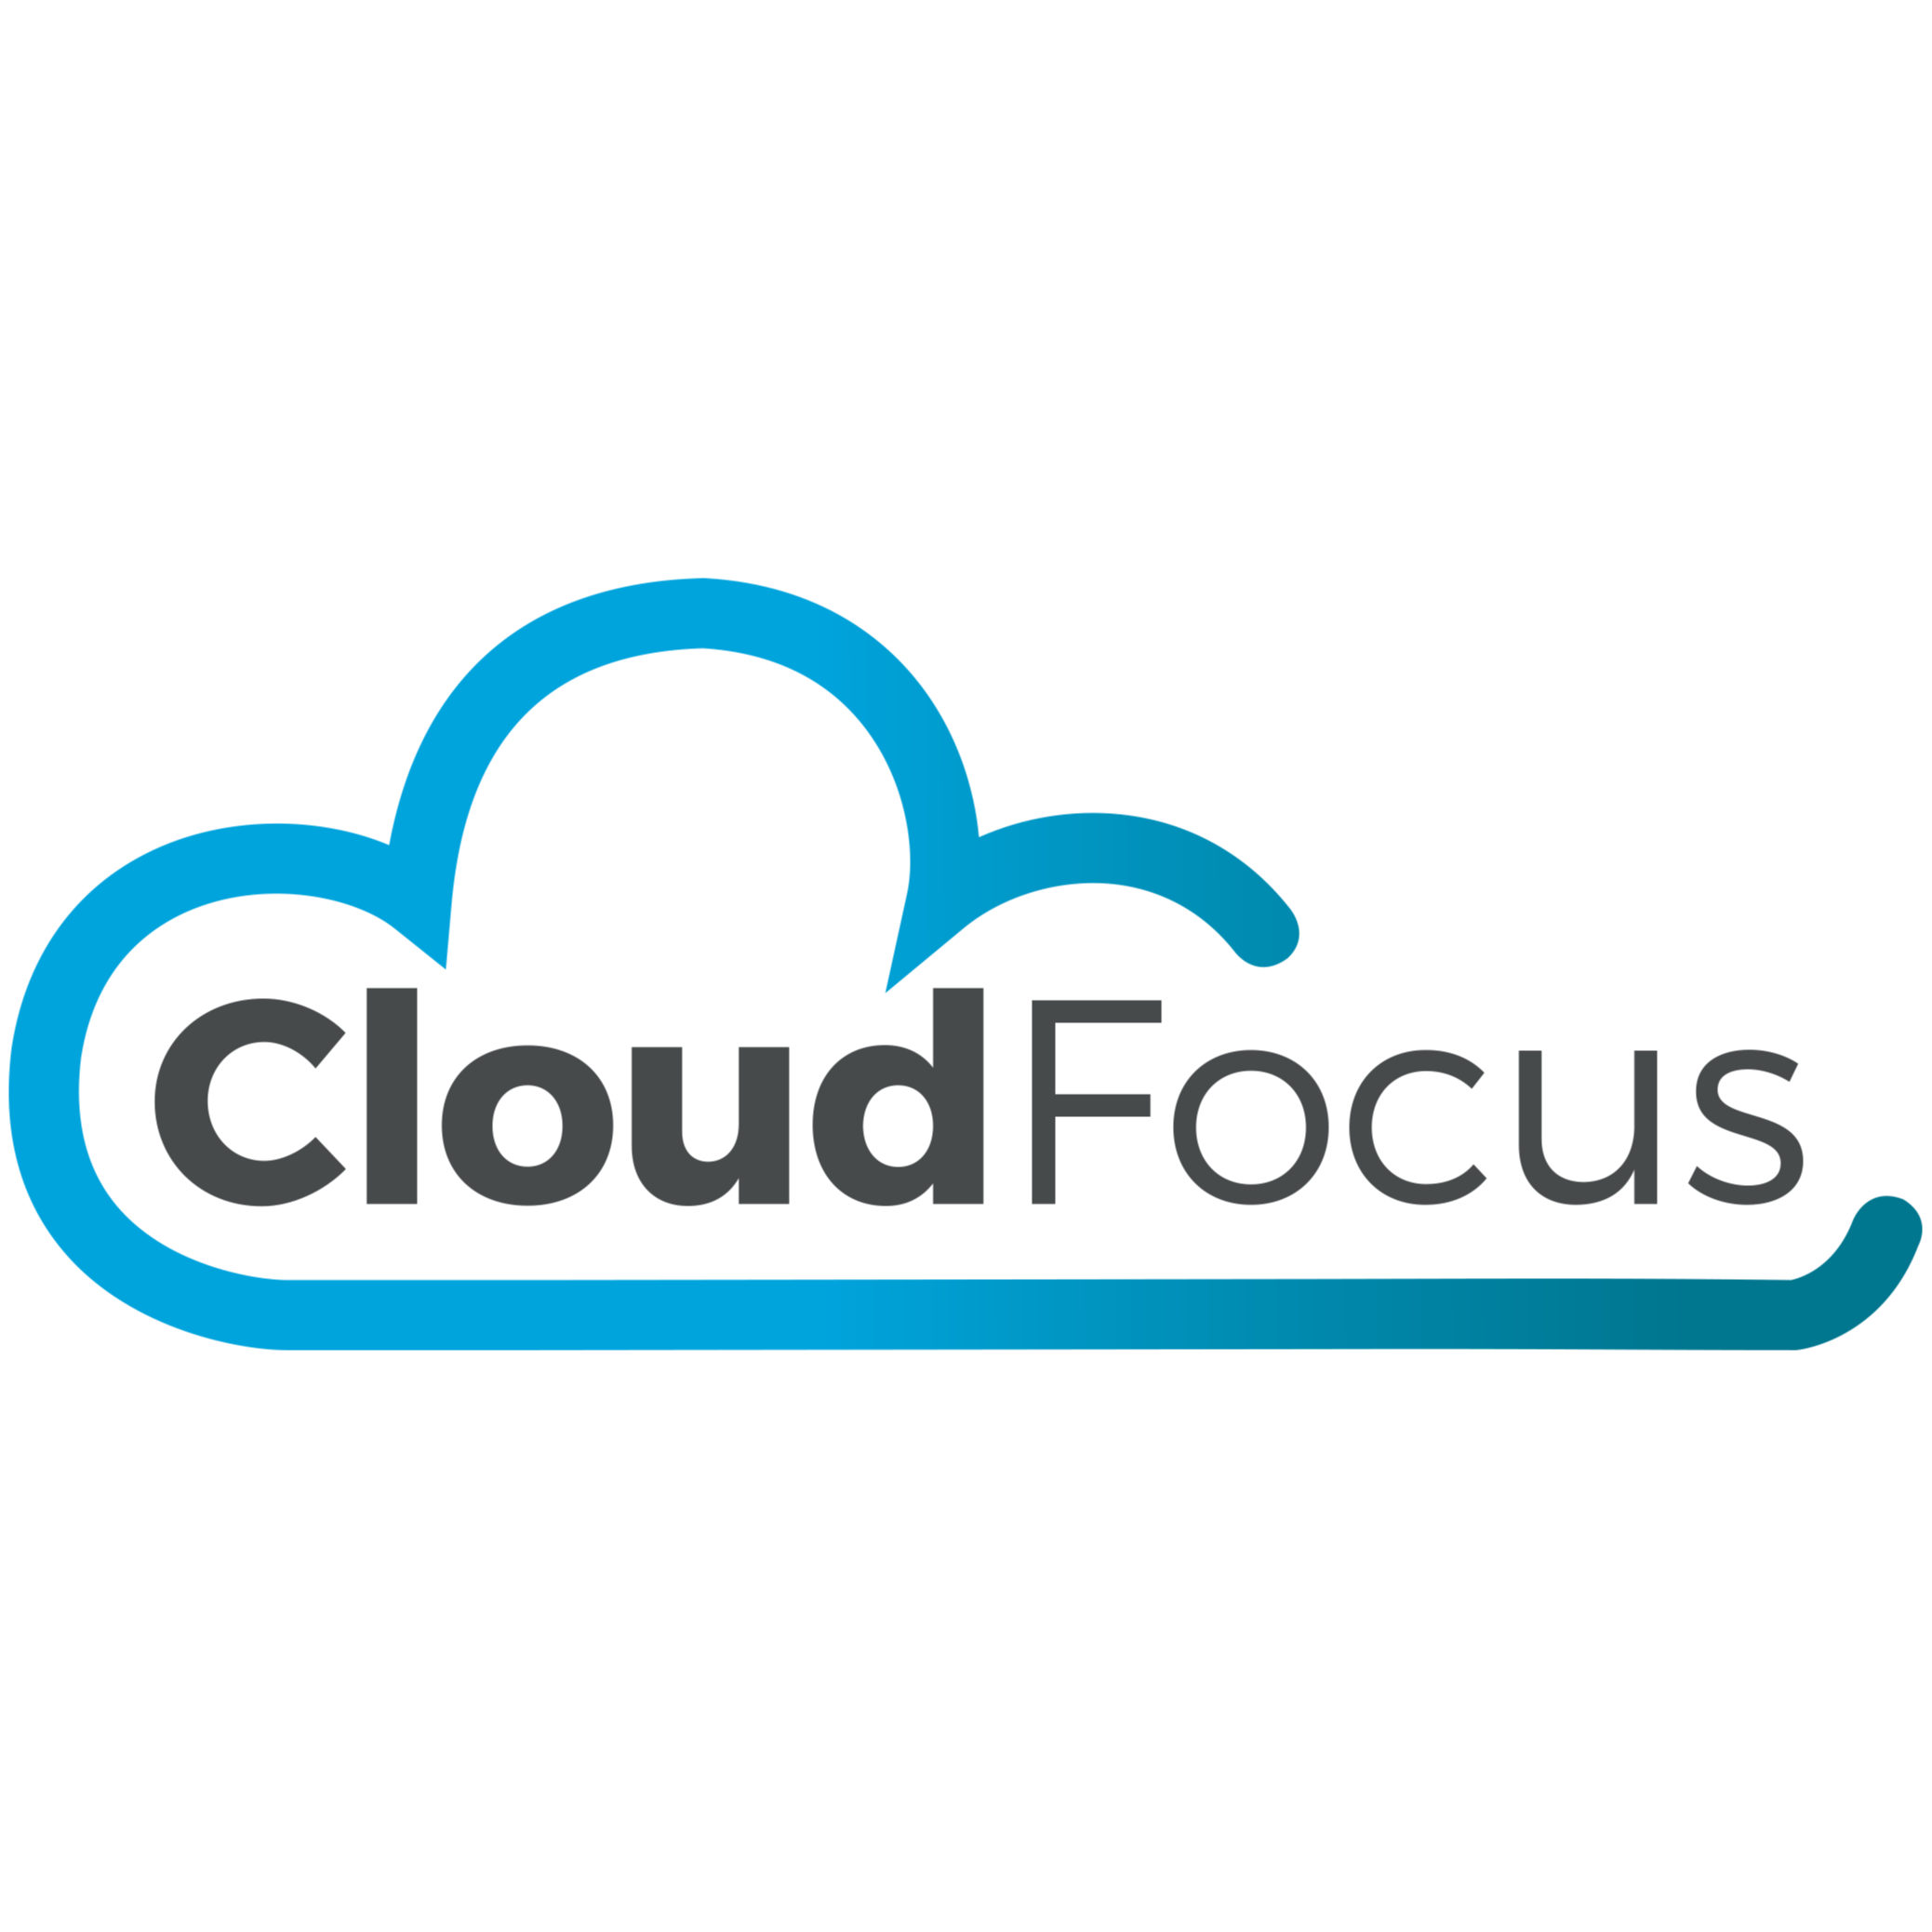 Cloud Focus Co., Ltd.